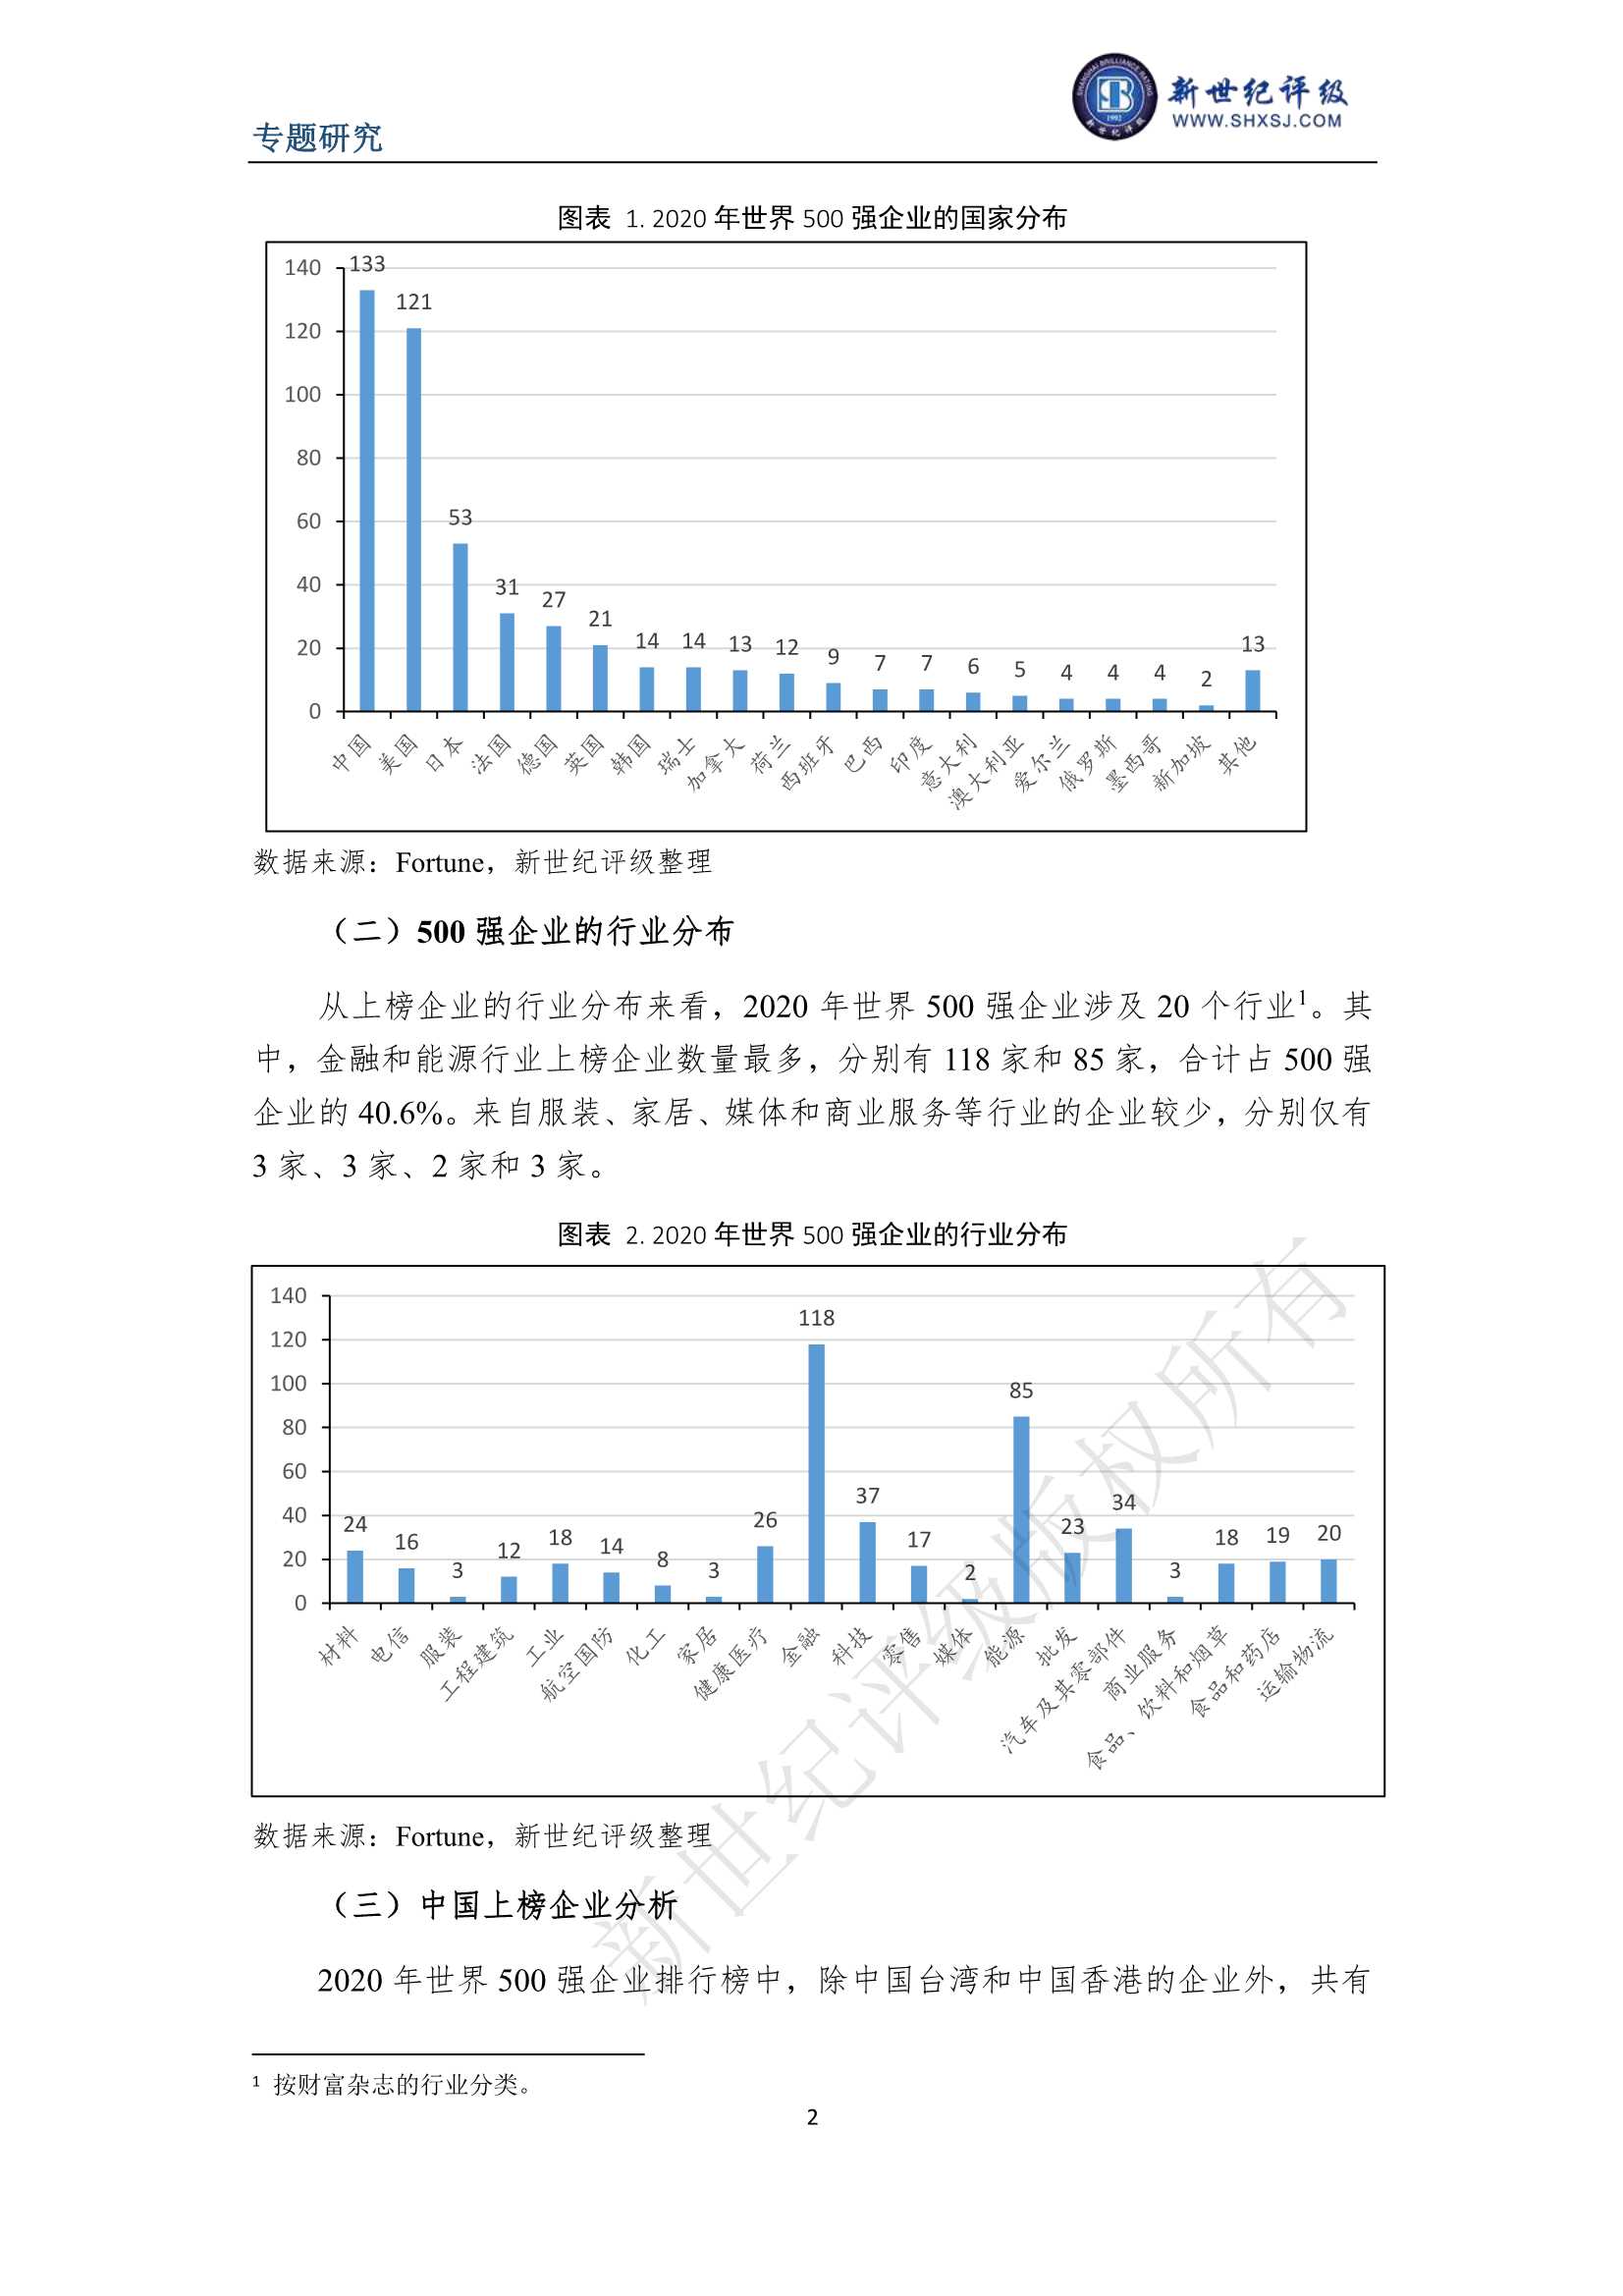 上海新世纪资信评估-世界500强企业主体信用级别浅析-2021.12-15页